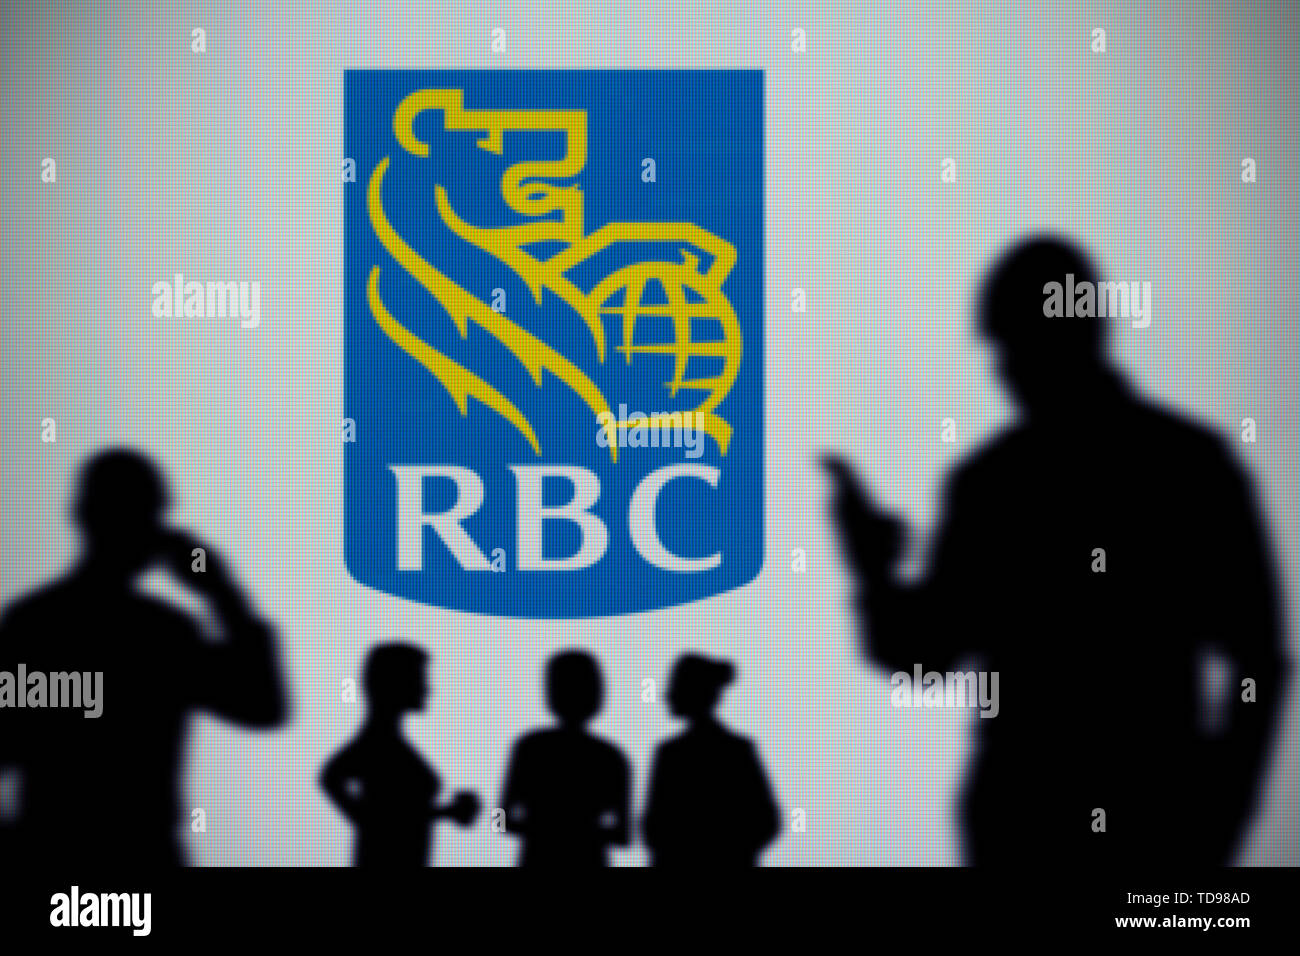 Der RBC Royal Bank Logo ist auf einen LED-Bildschirm im Hintergrund, während eine Silhouette Person ein Smartphone verwendet (nur redaktionelle Nutzung) Stockfoto